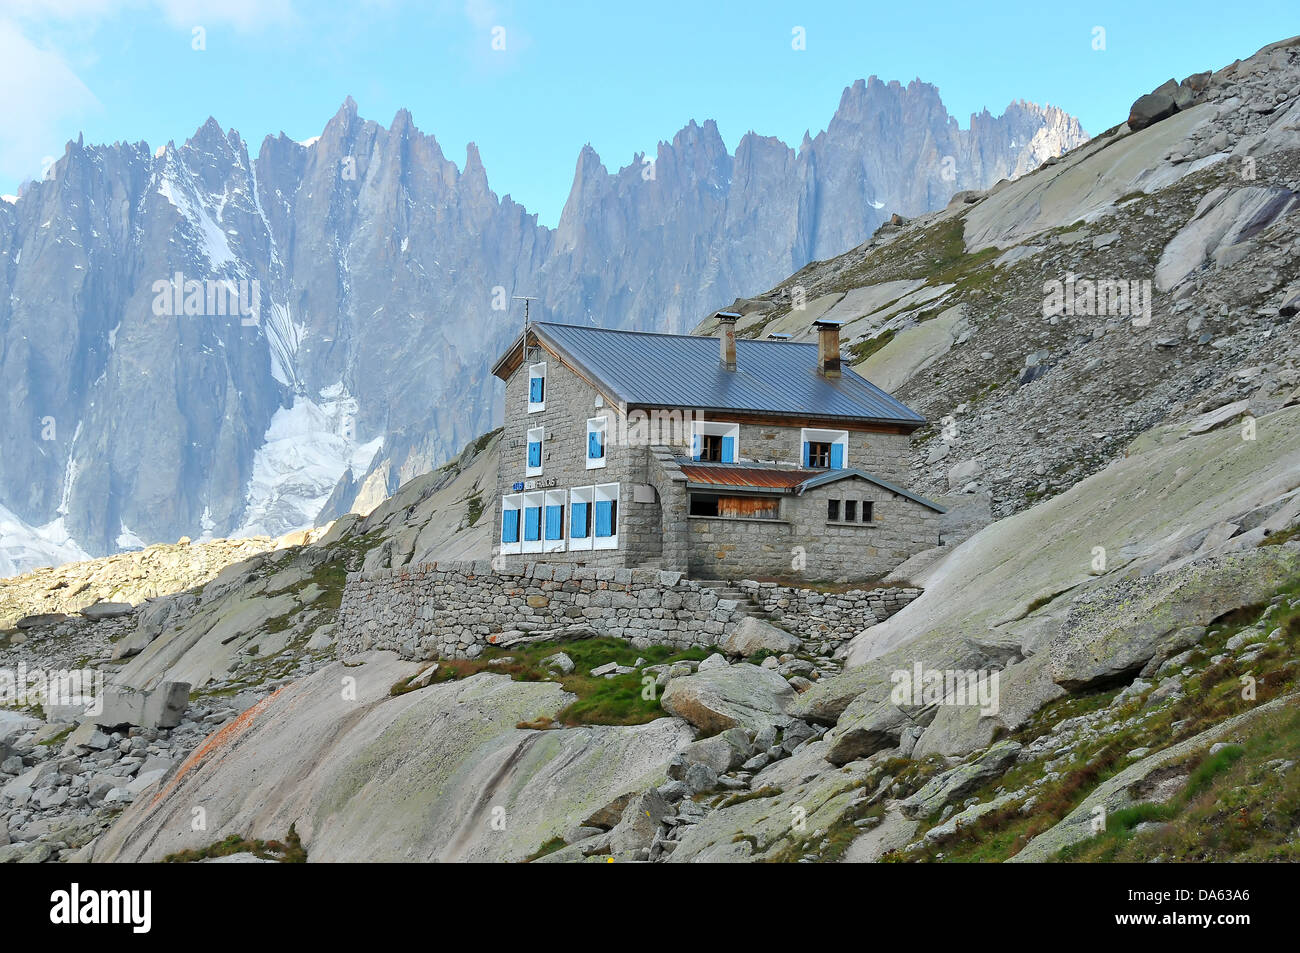 Il couvercle baita di montagna, alta sul massiccio del Monte Bianco al di sopra di Chamonix e la Mer de Glace glacier Foto Stock